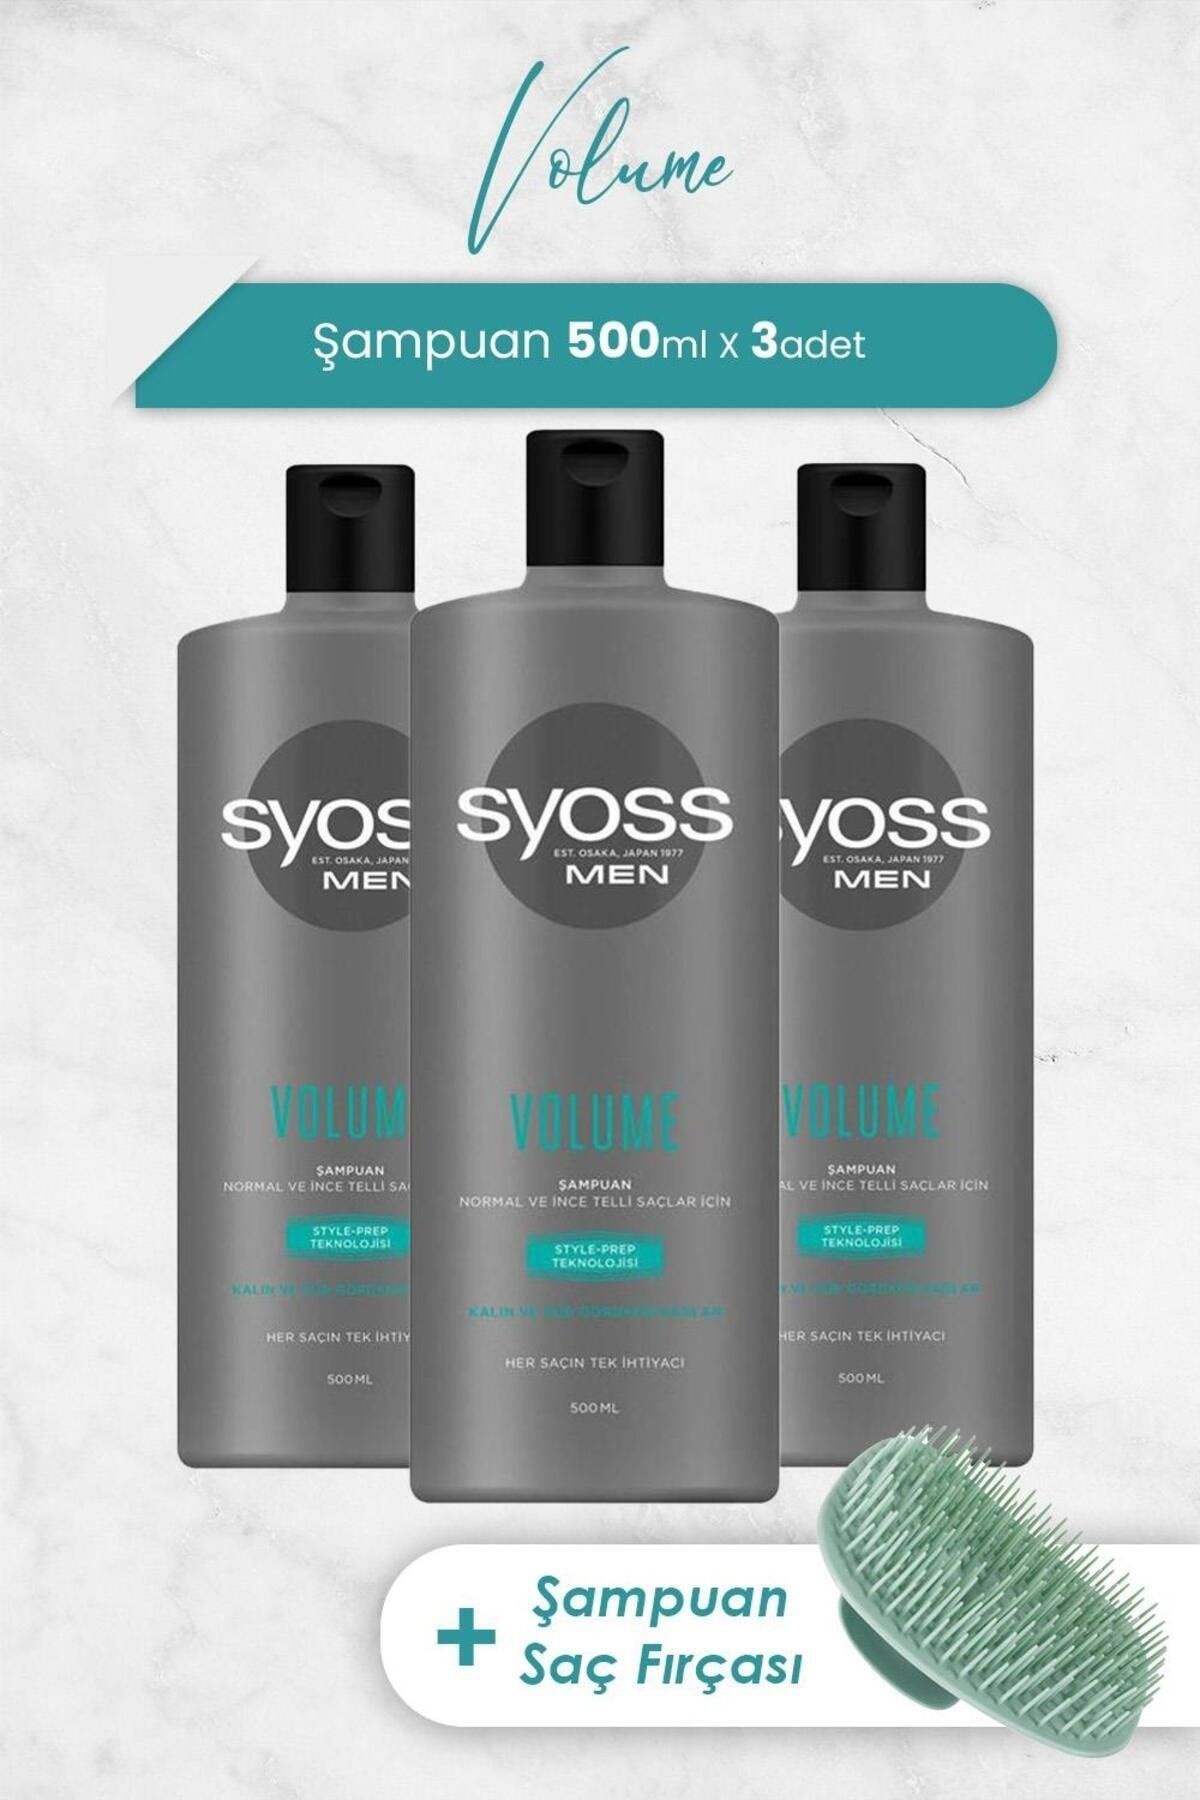 Syoss Men Volume Şampuan 500 ml x 3 Adet ve Şampuan Fırçası